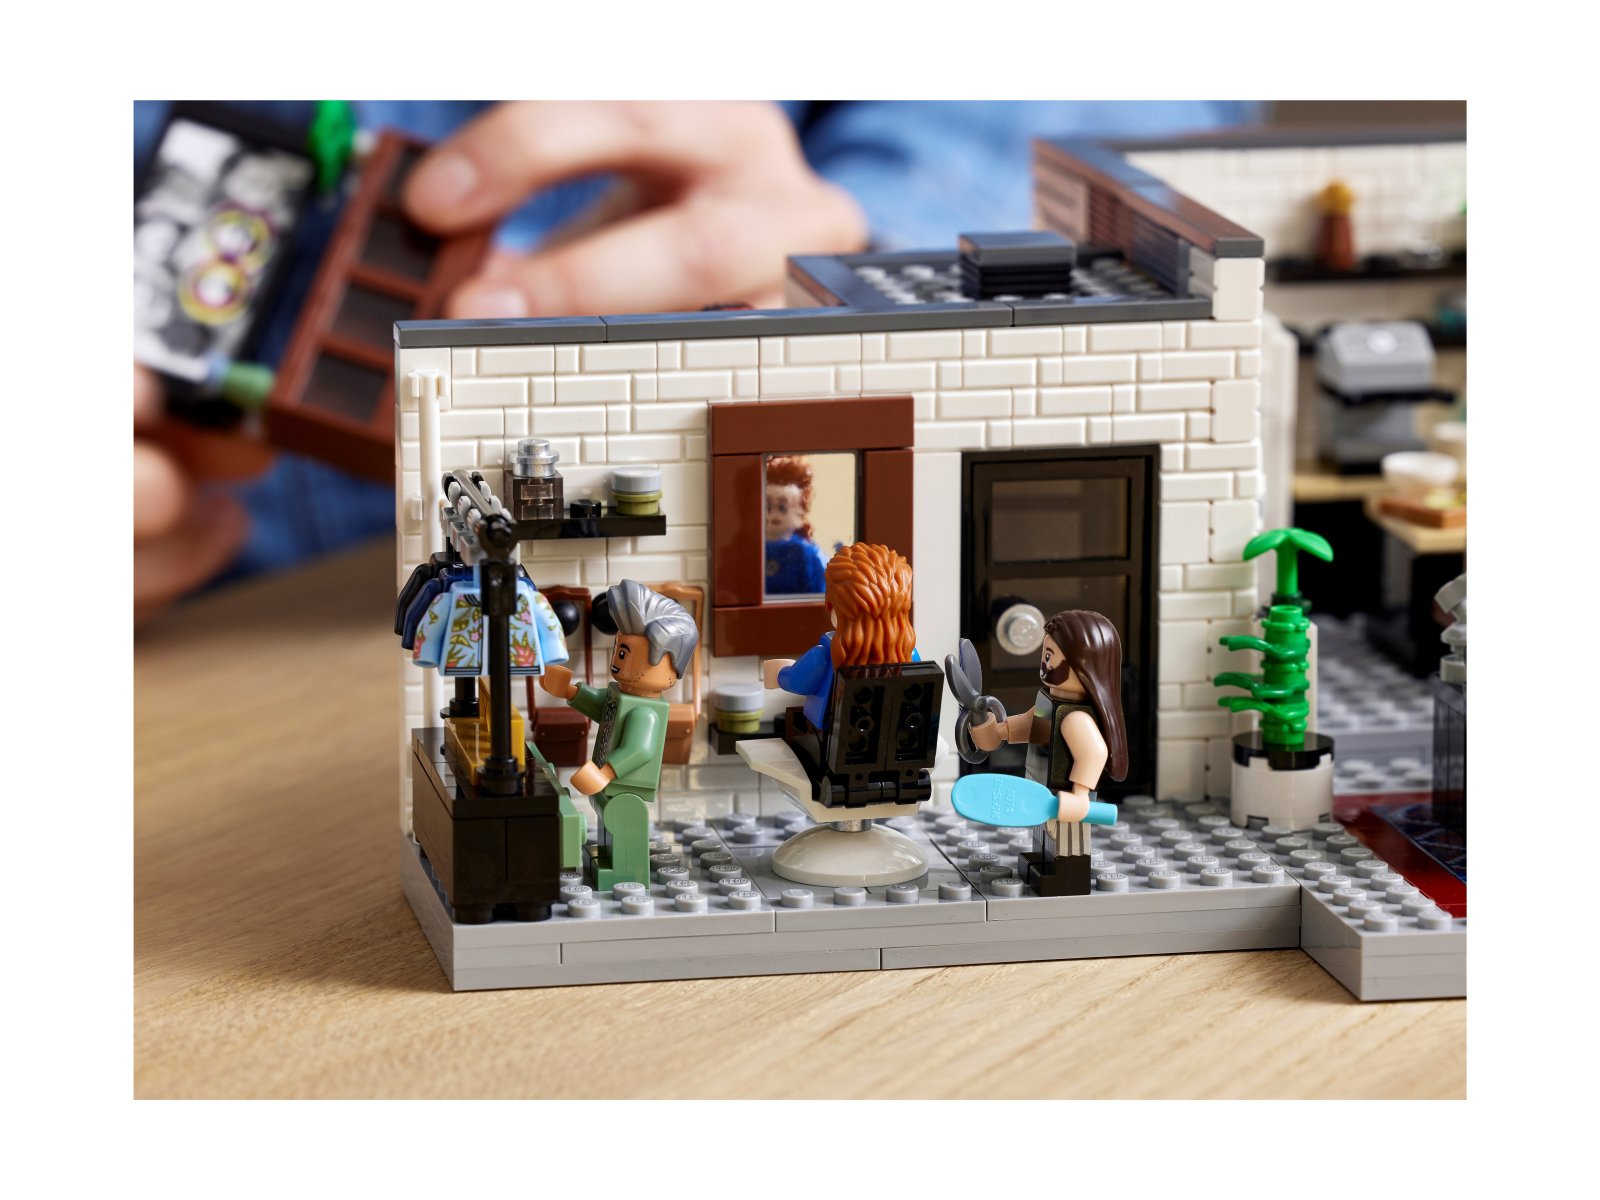 LEGO 10291 Queer Eye – Mieszkanie Fab Five